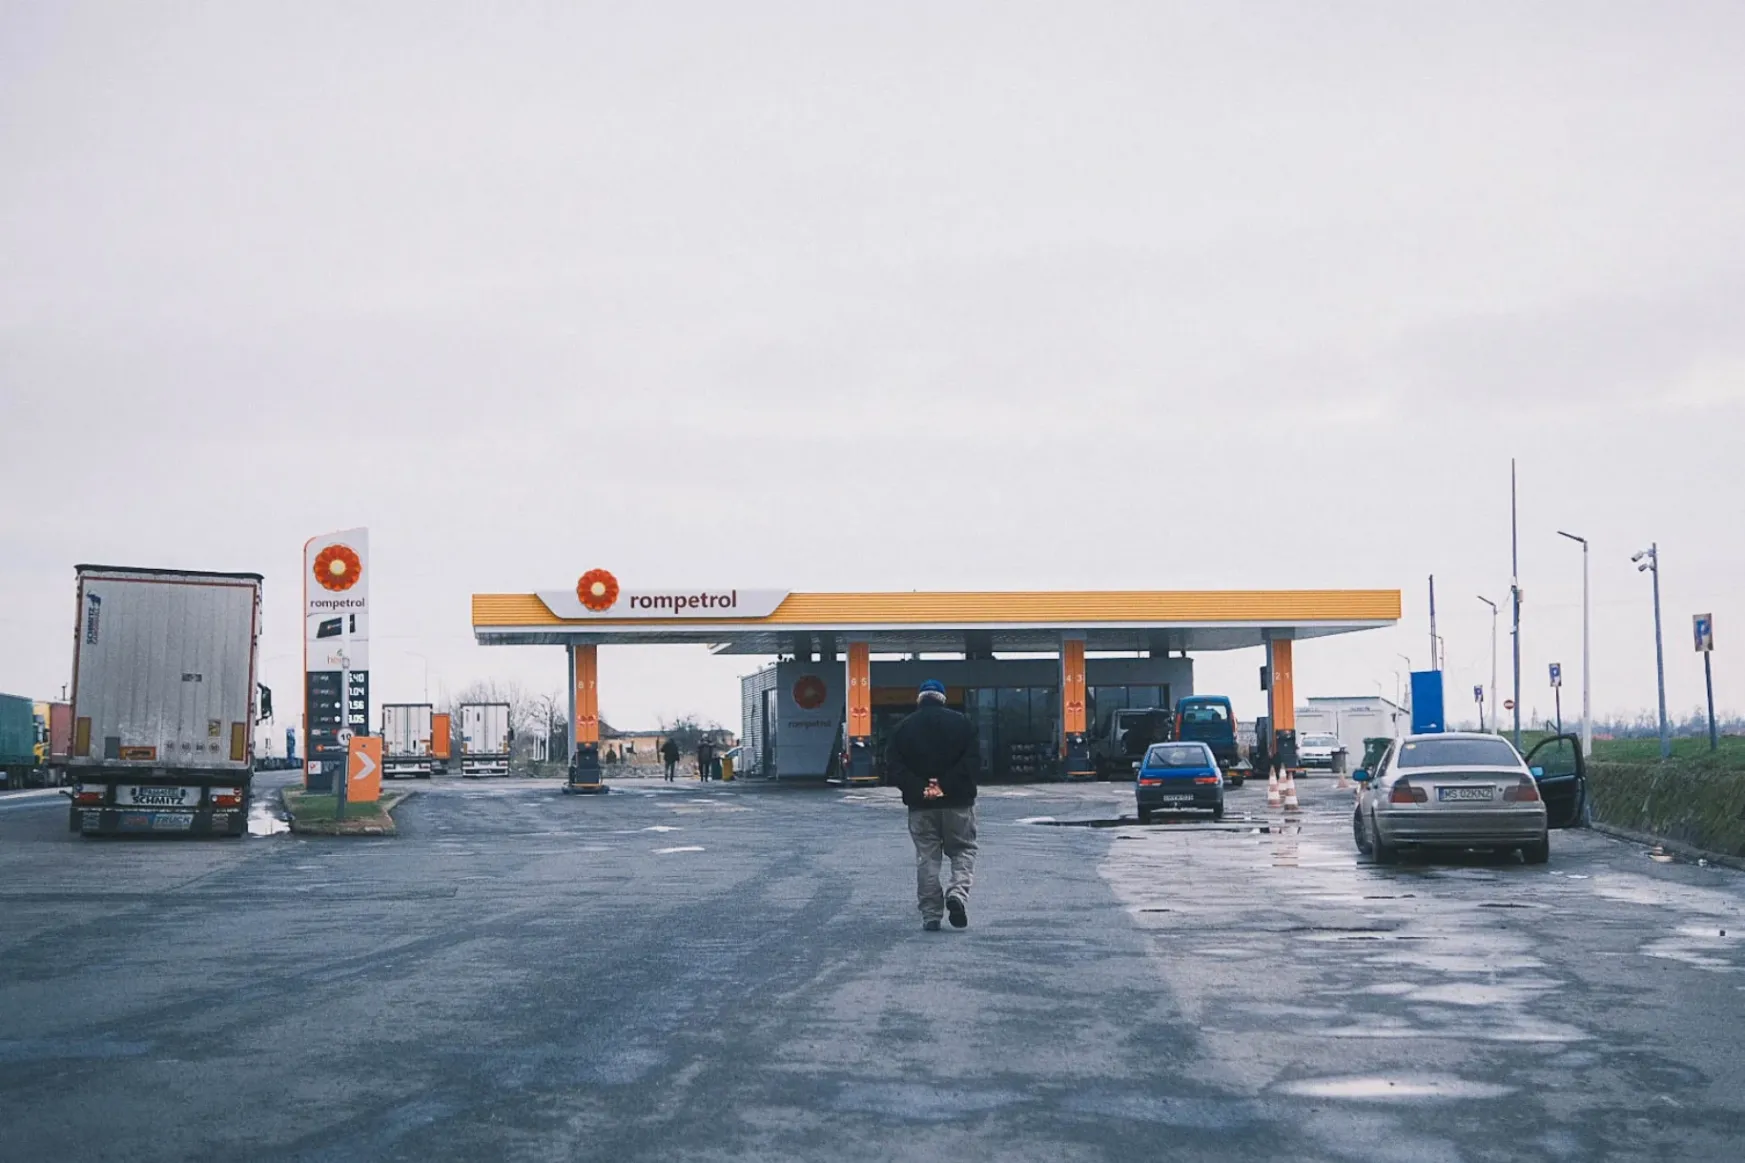 Literenként 125 forinttal is olcsóbb lehet a romániai tankolás, ezrek maradhatnak a zsebünkben